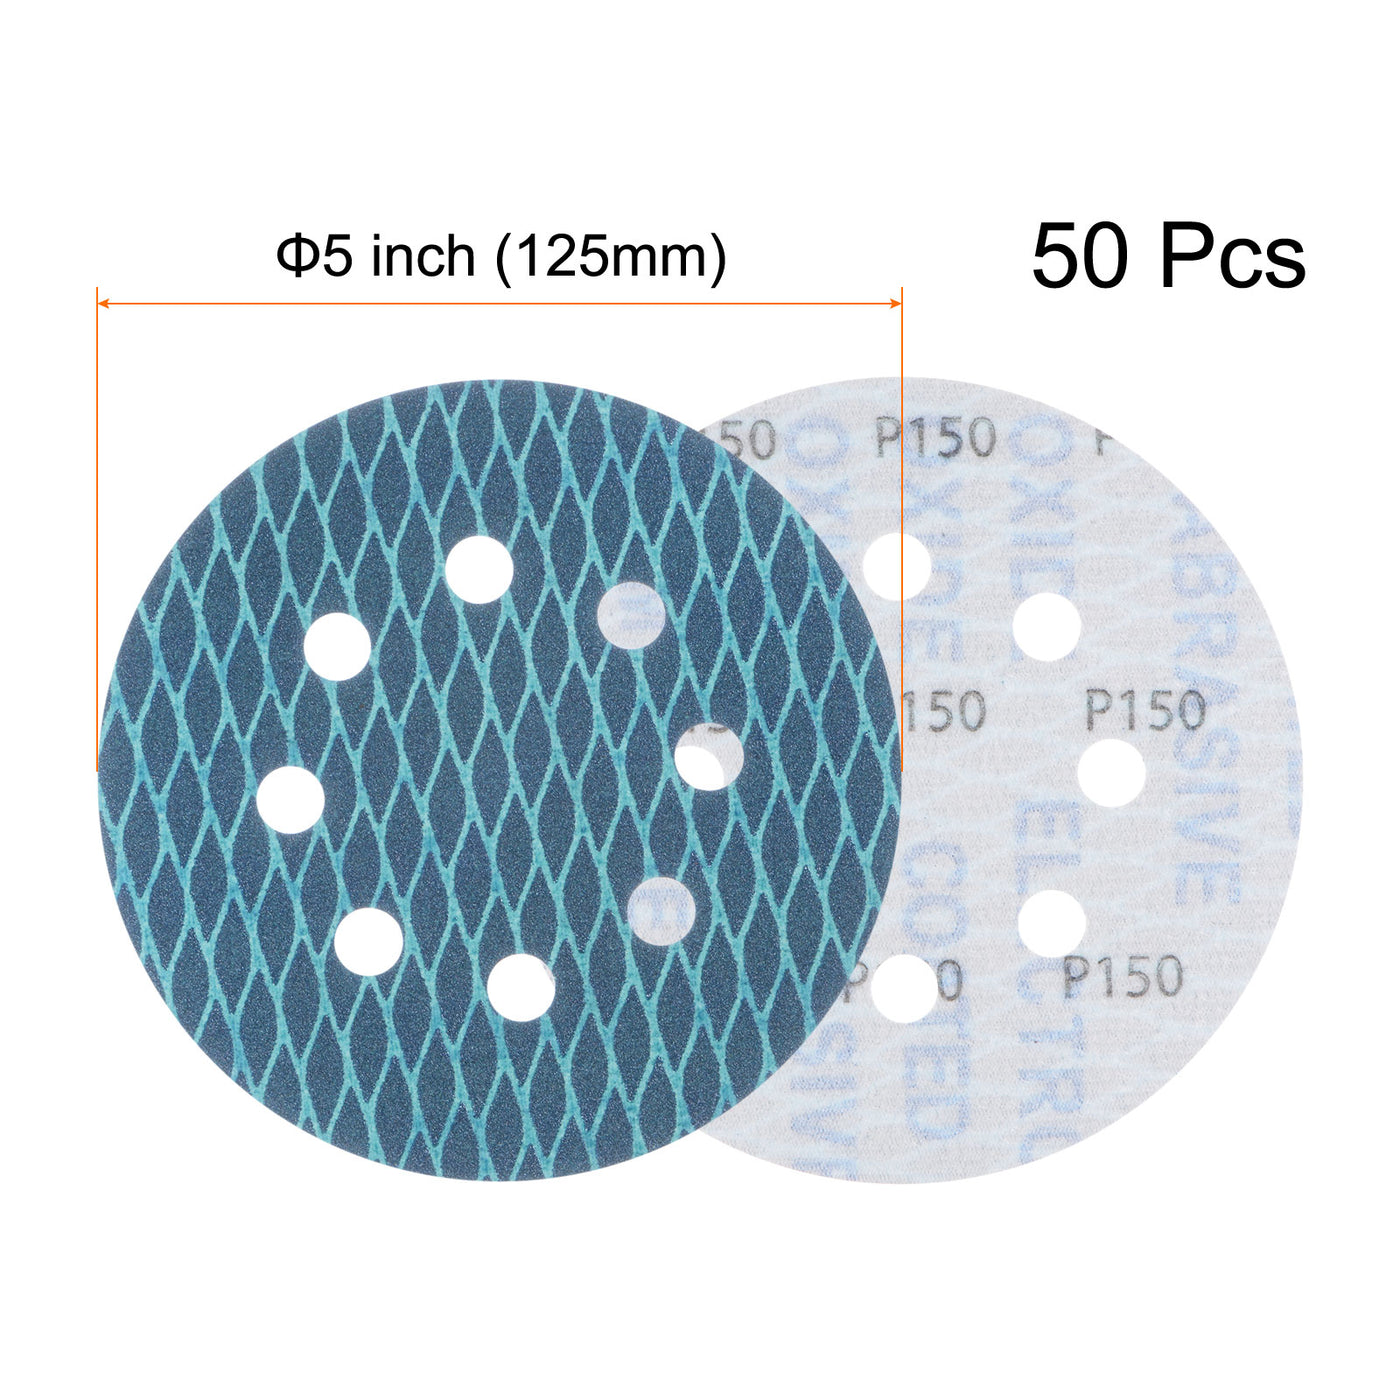 Harfington 50pcs Diamond Shape Sanding Discs 5" 150 Grit Hook & Loop Rhomb Sandpaper 8 Hole